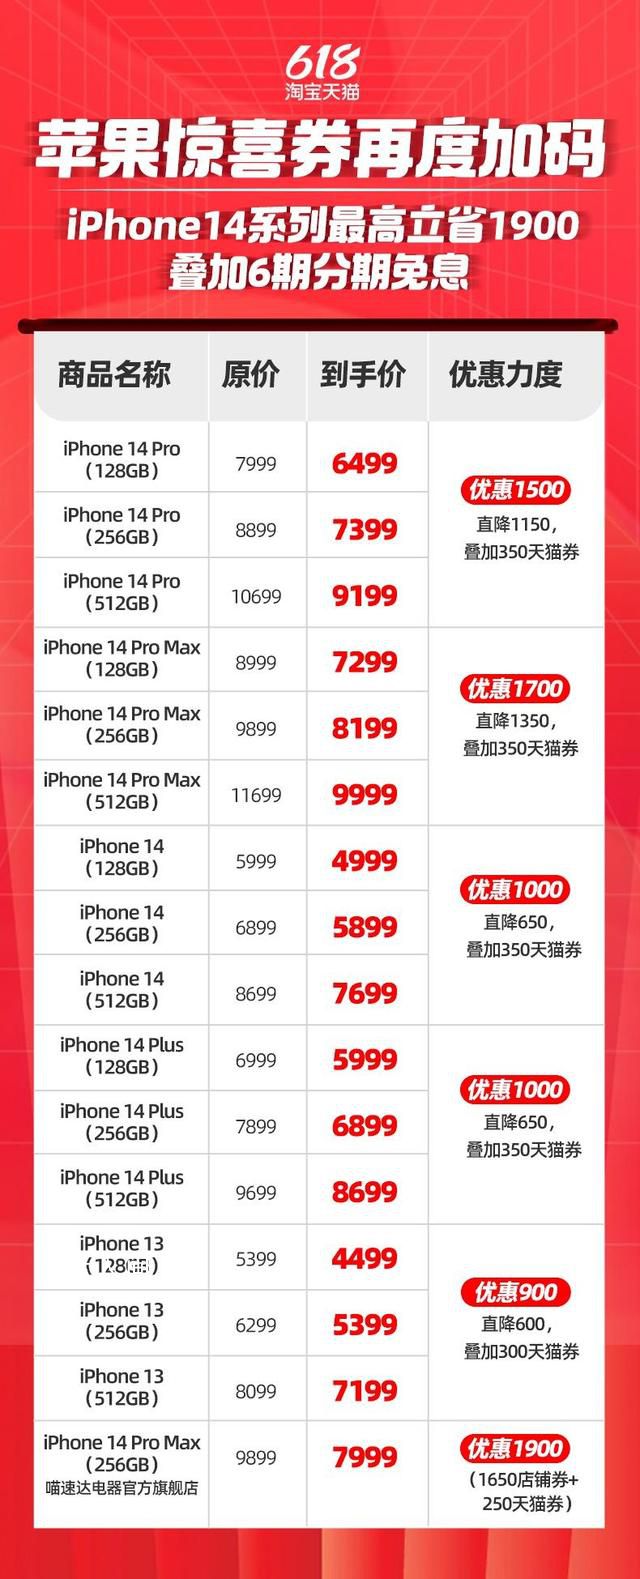 iPhone14全系跳水最高降1900 淘宝天猫618正式开卖